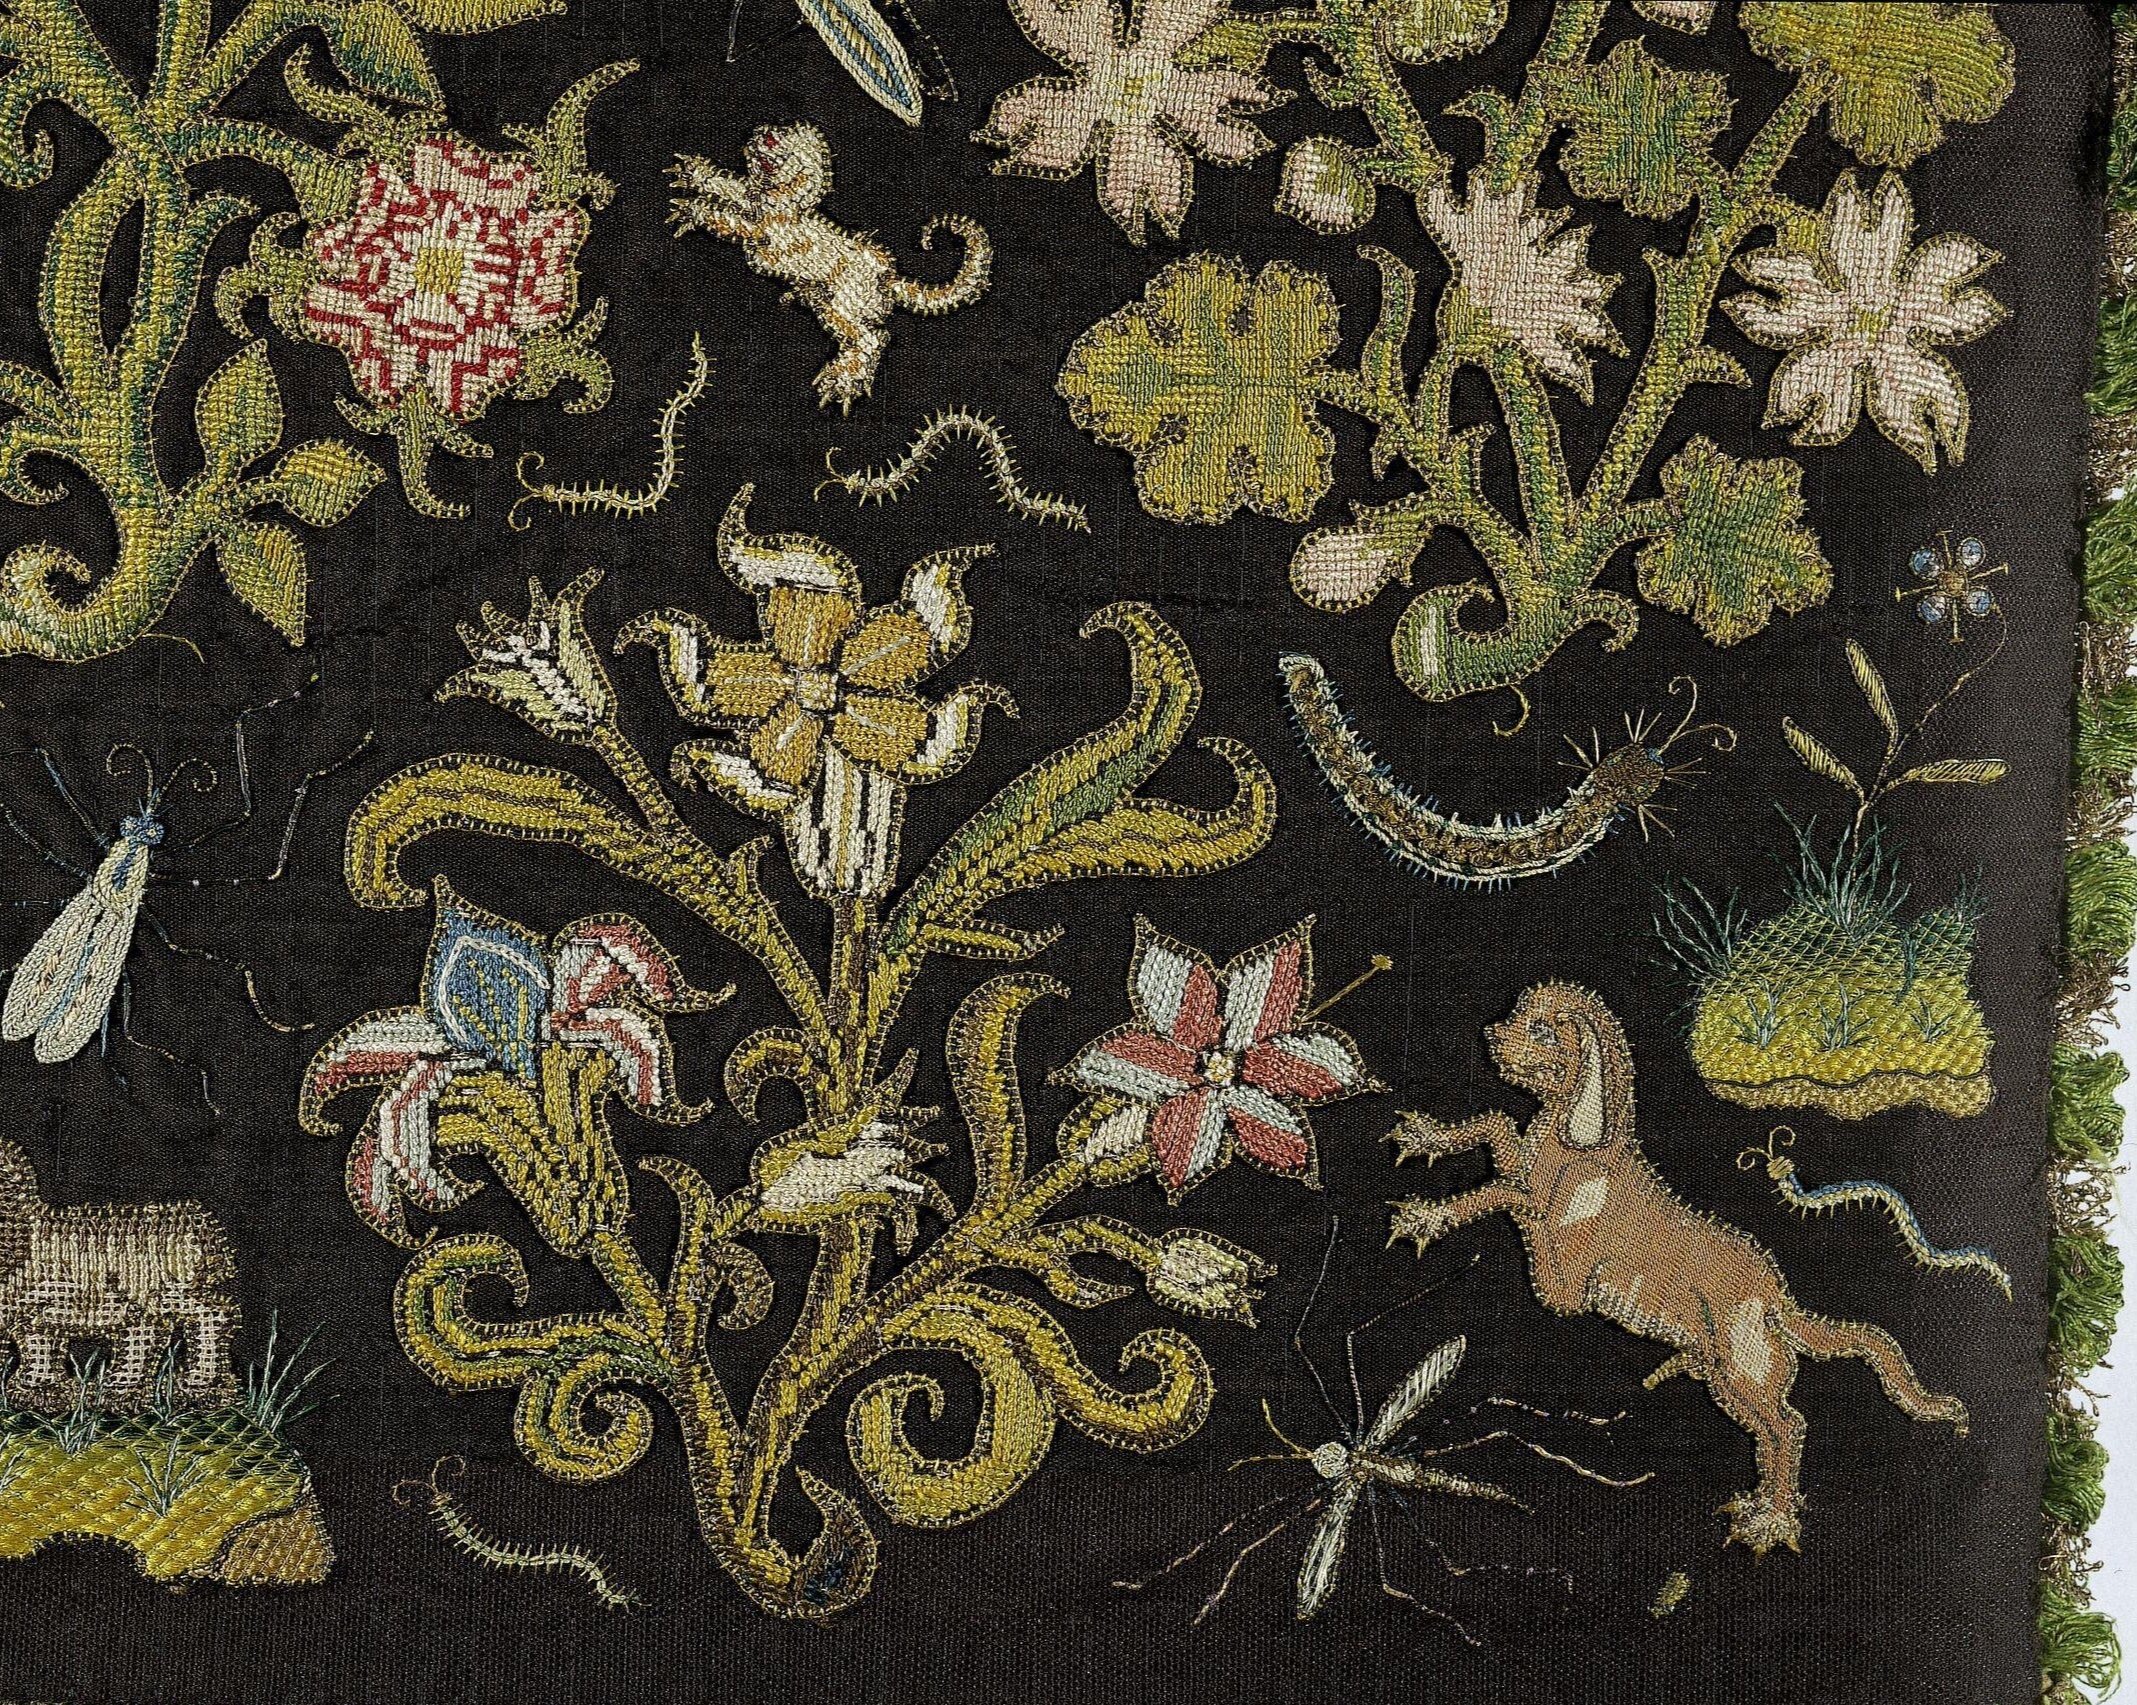 Tudor embroidery